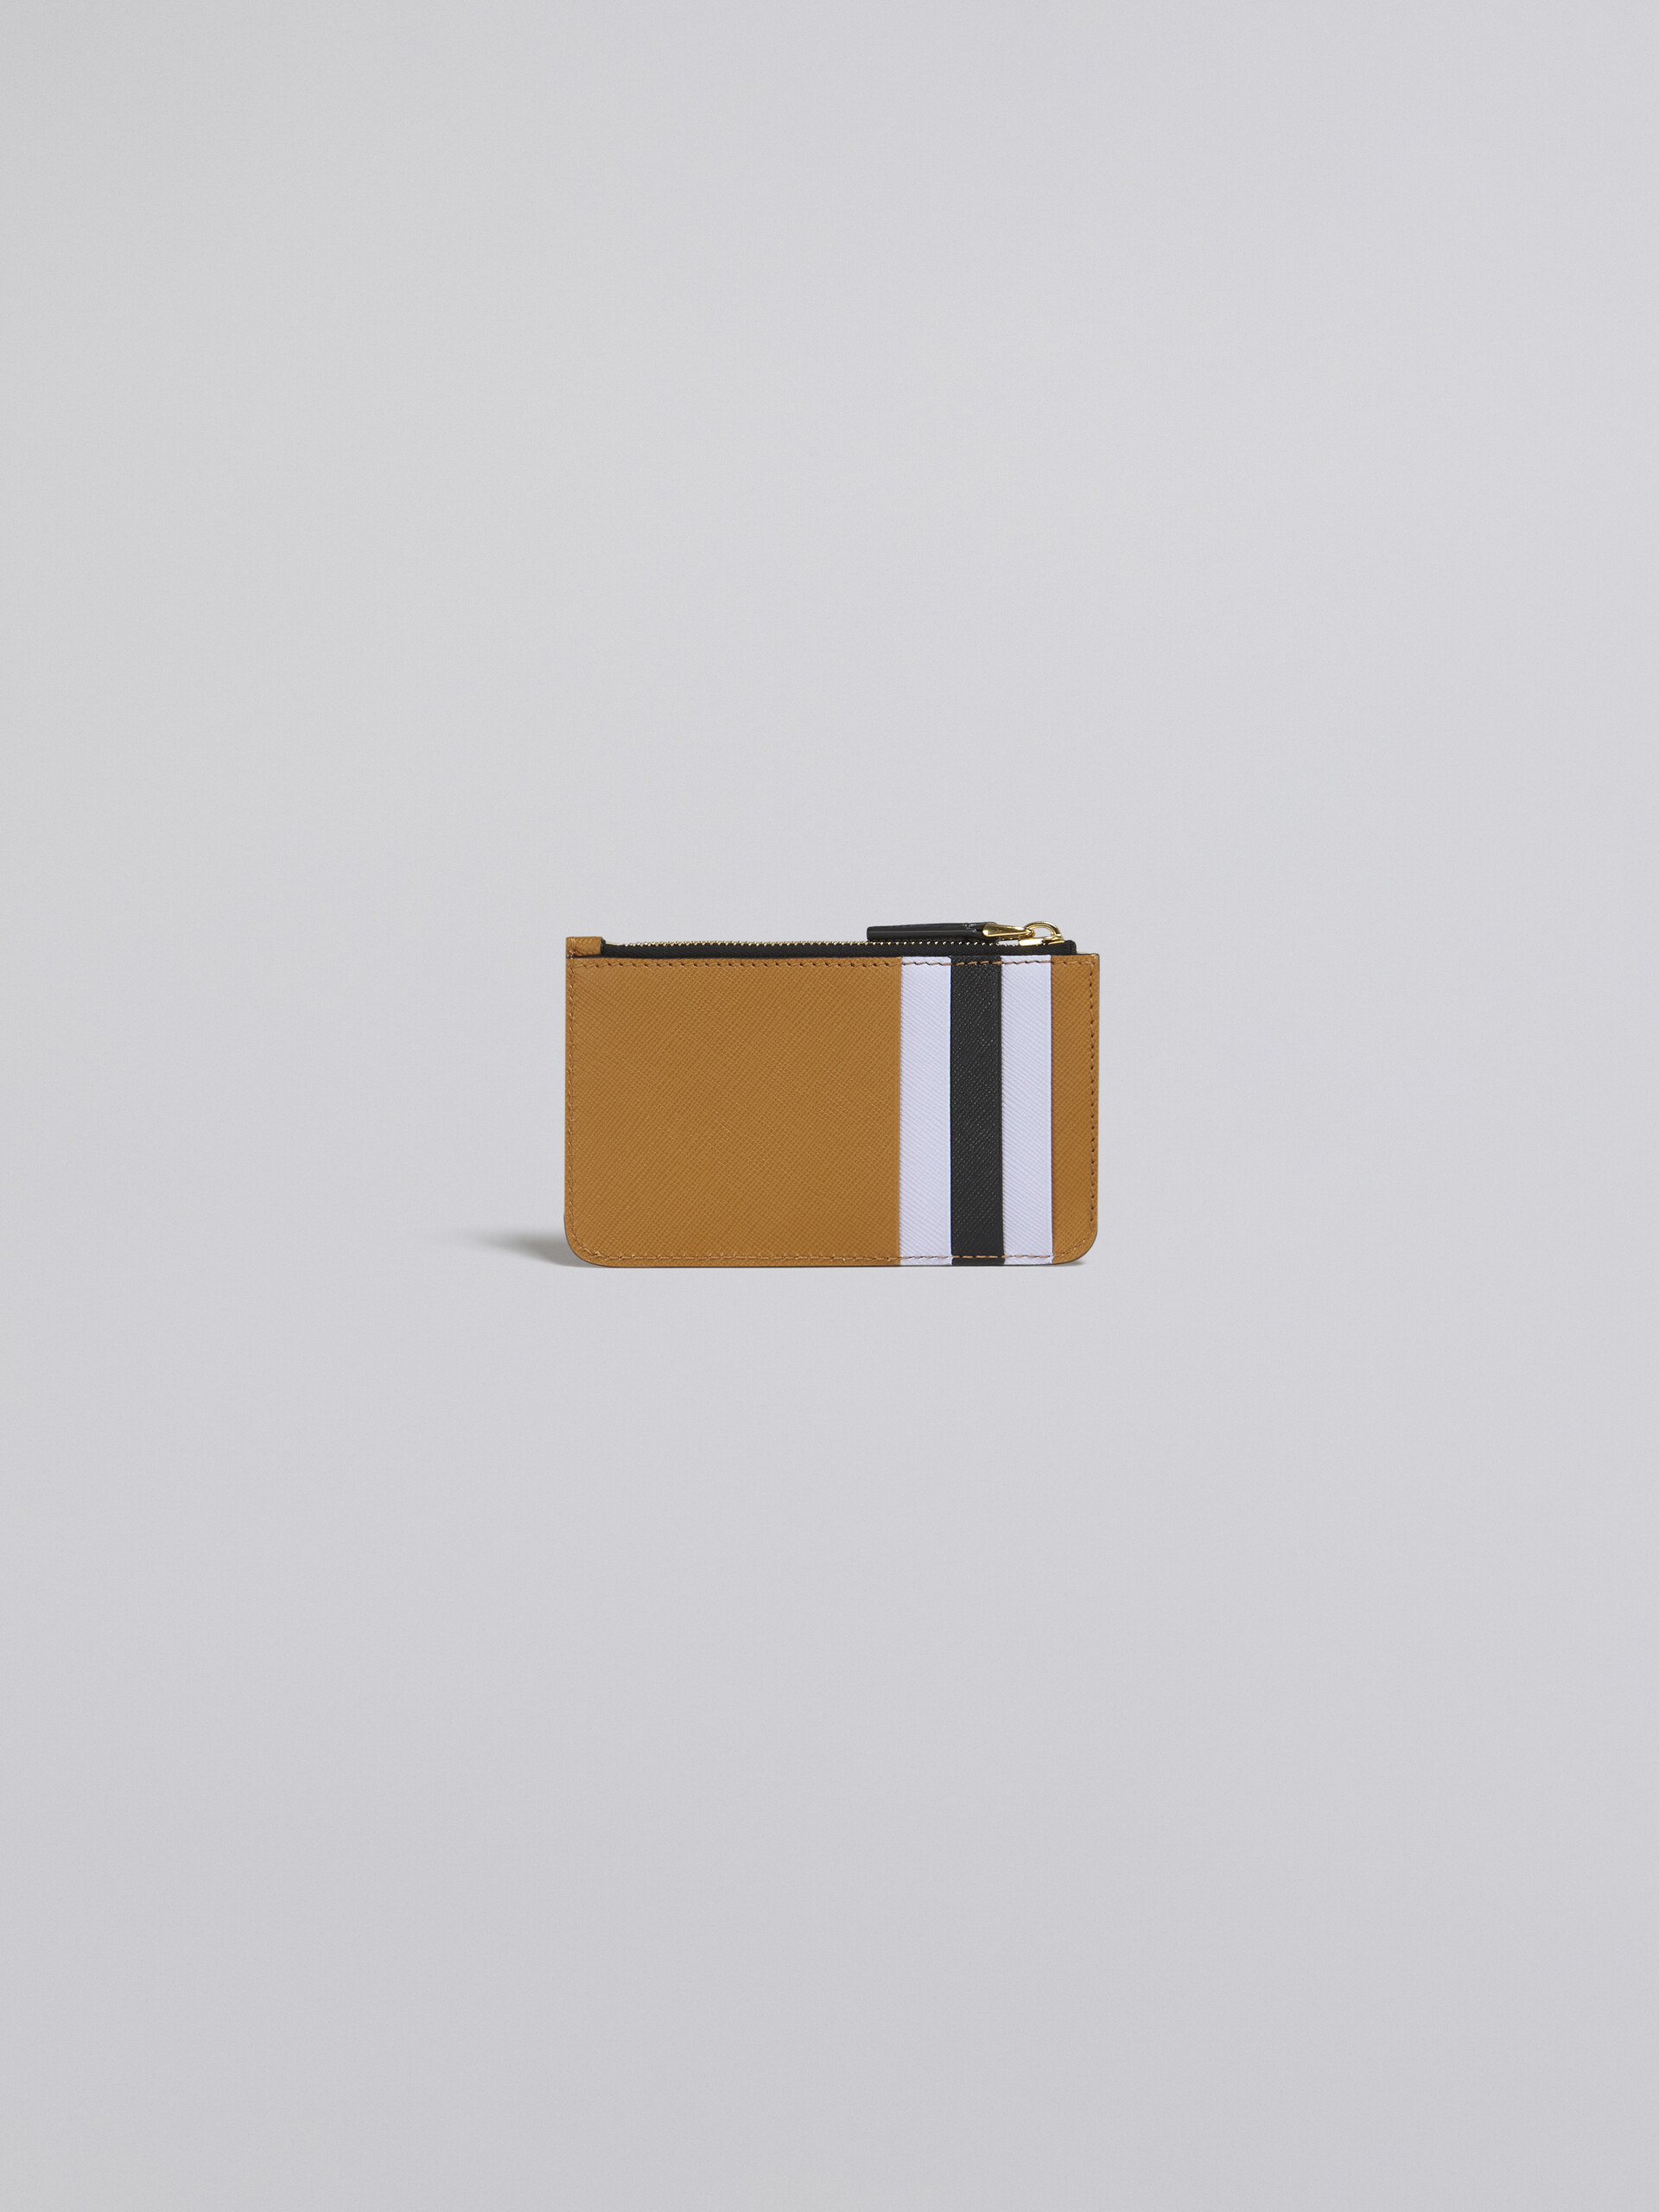 ブラウン ライラック ブラック サフィアーノレザー製 カードケース - 財布 - Image 3